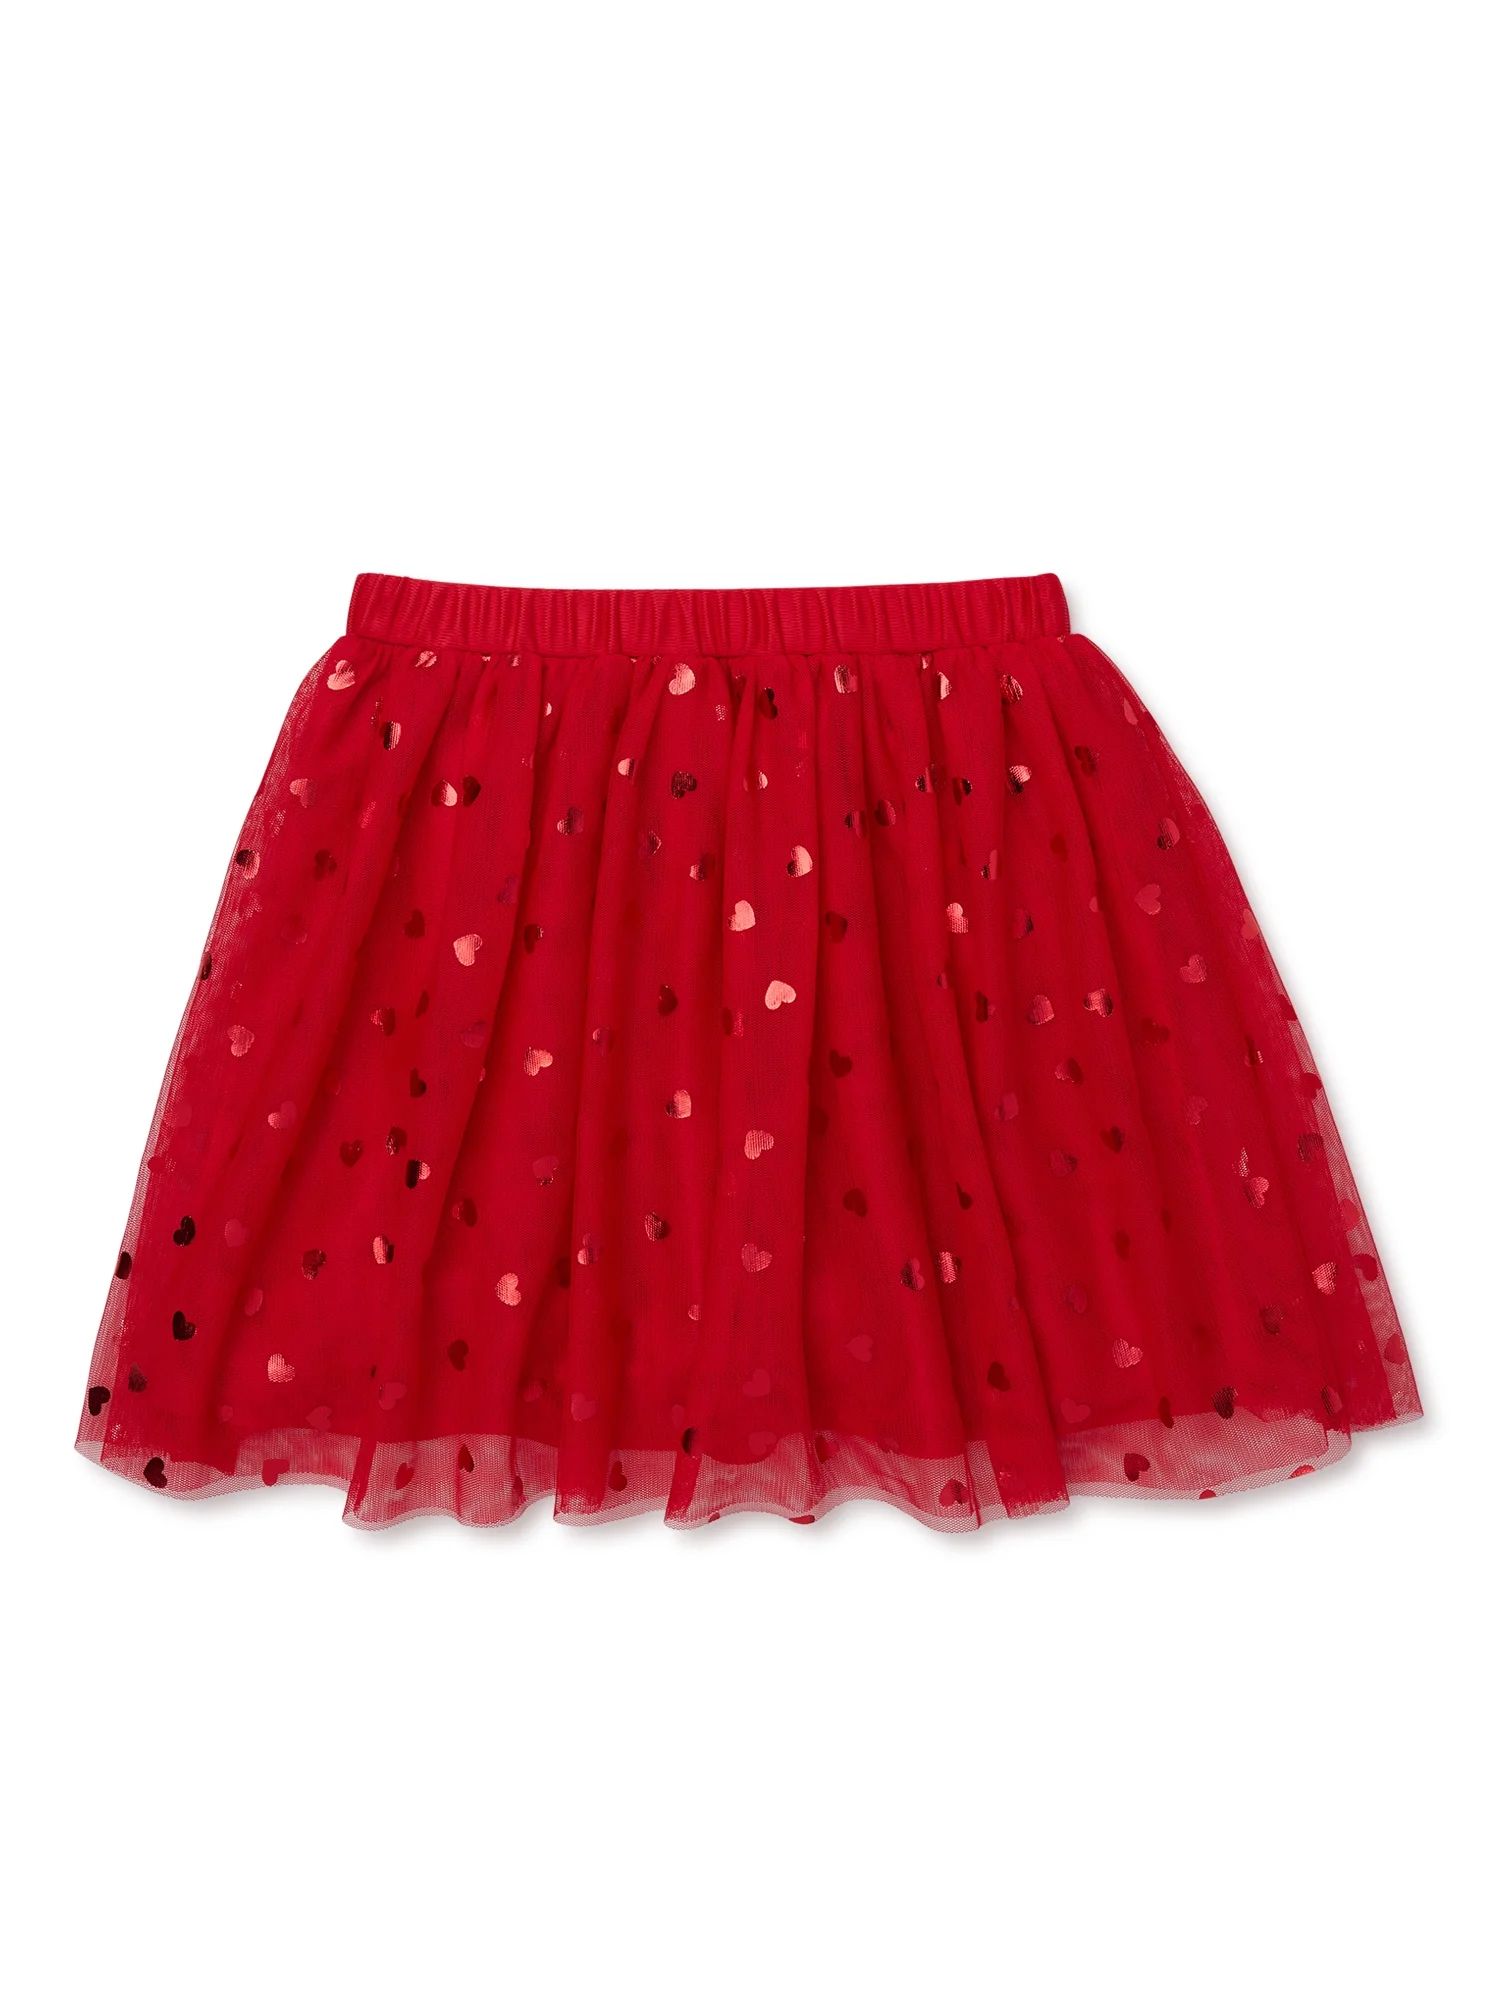 Wonder Nation Girls Valentines Day Girls Skirt, Sizes 4-18 | Walmart (US)